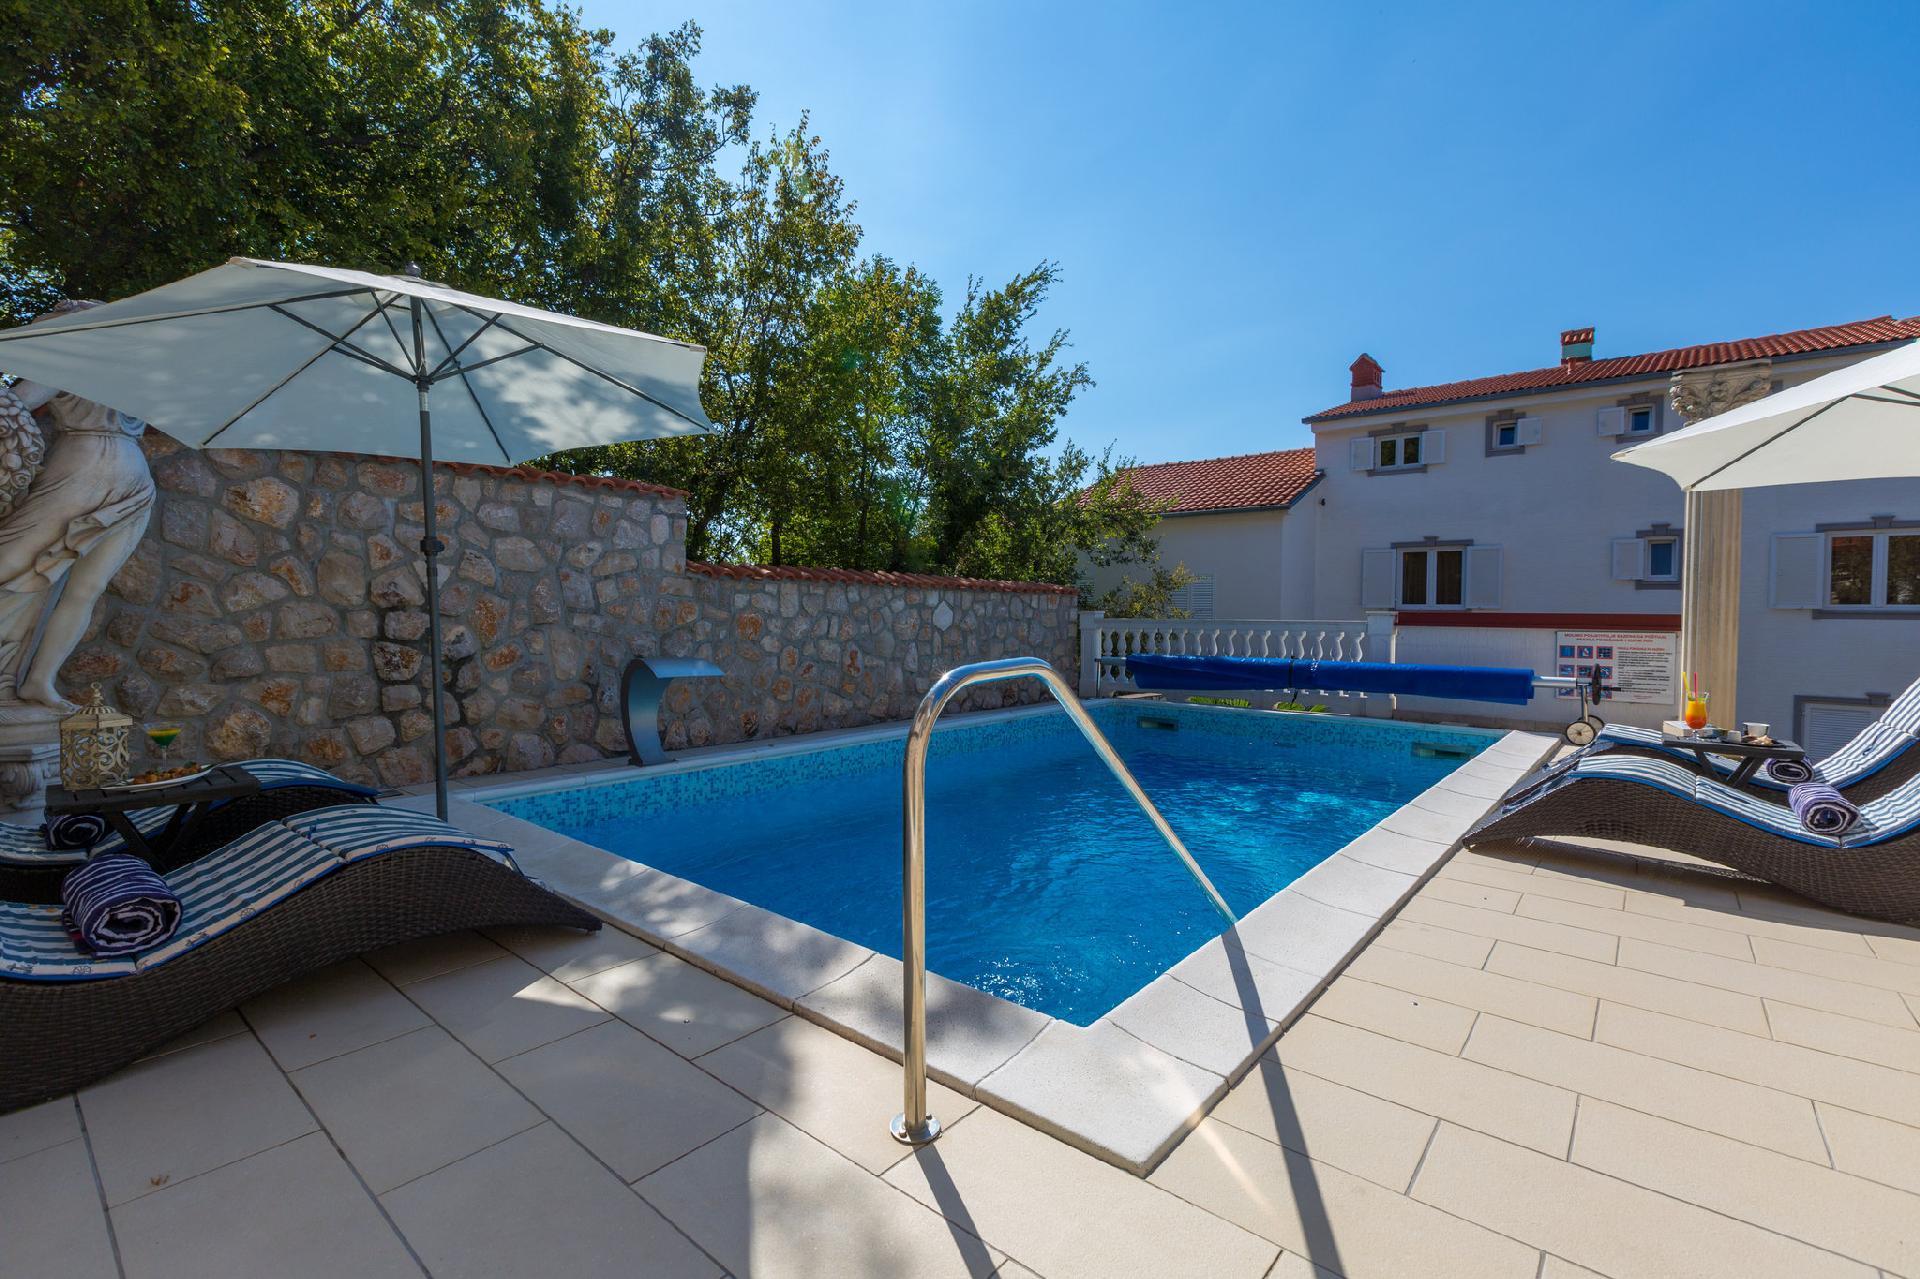 Ferienwohnung für 2 Personen ca. 46 m² i  in Kroatien